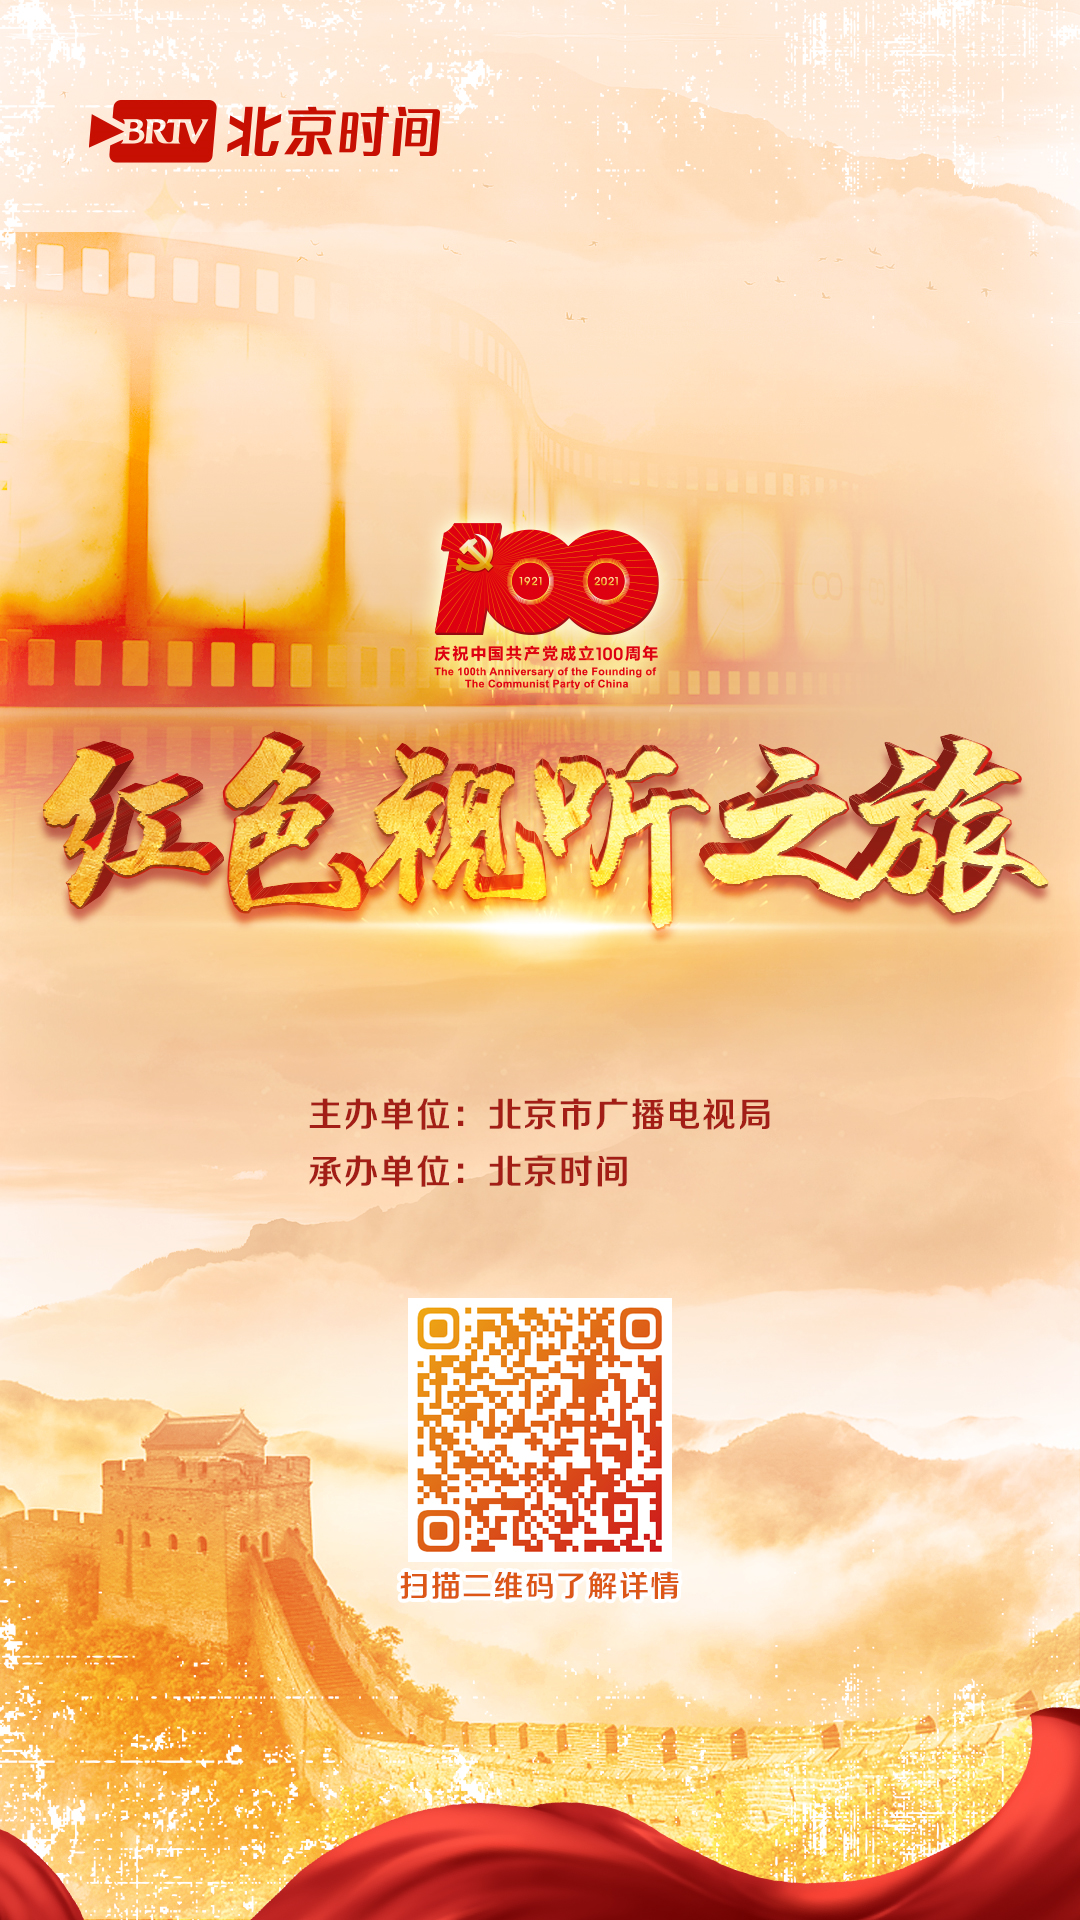 北京市广播电视“红色视听之旅” 正式开启图2.png